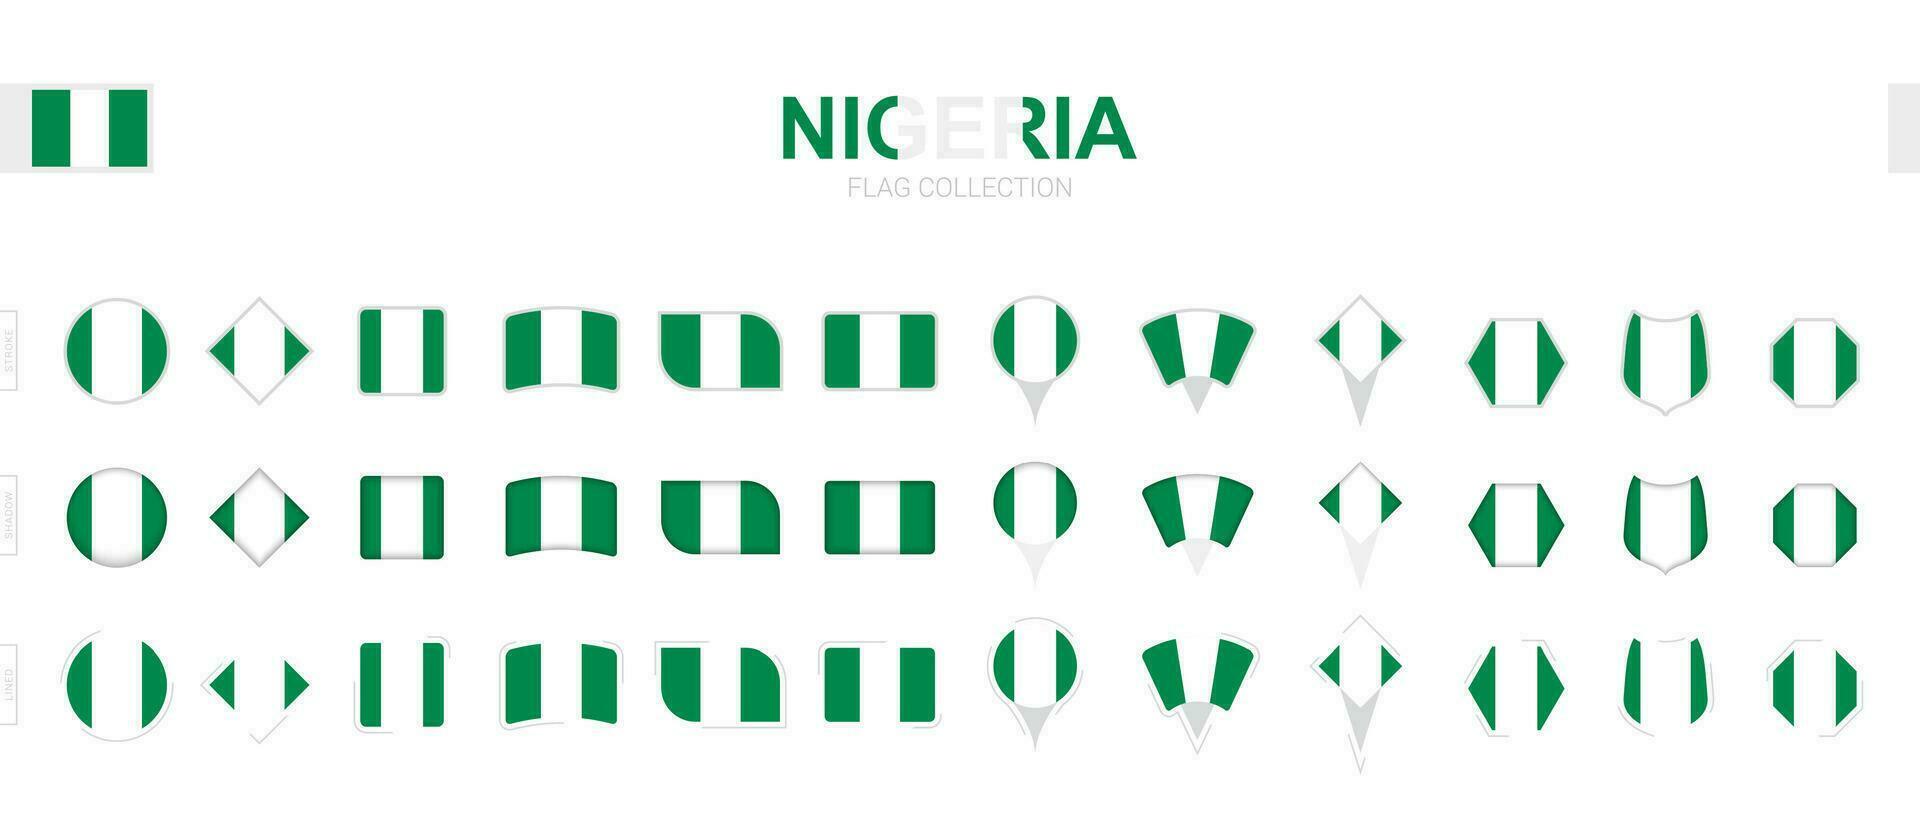 groß Sammlung von Nigeria Flaggen von verschiedene Formen und Auswirkungen. vektor